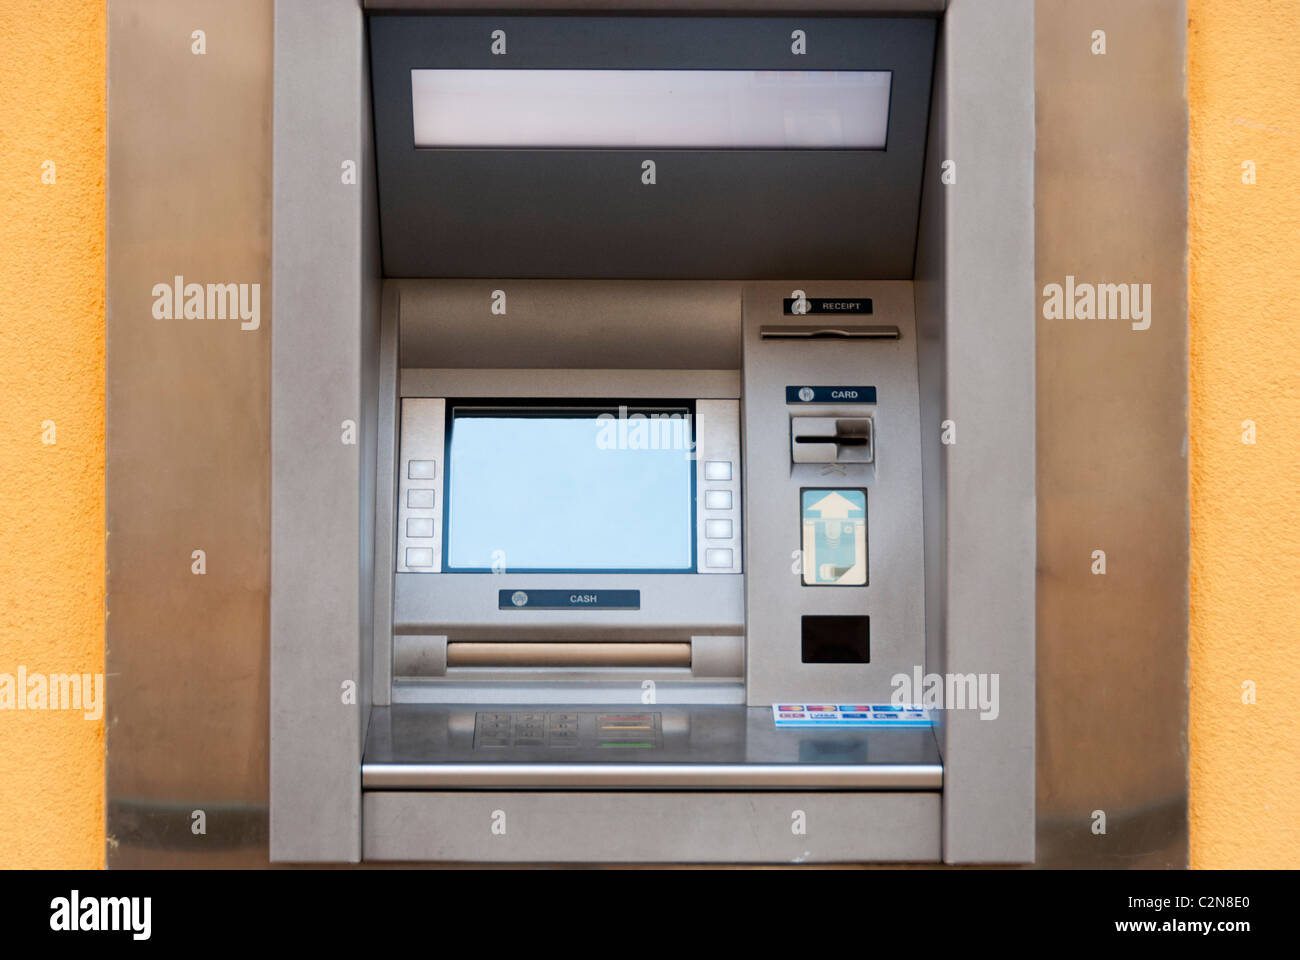 ATM Stock Photo